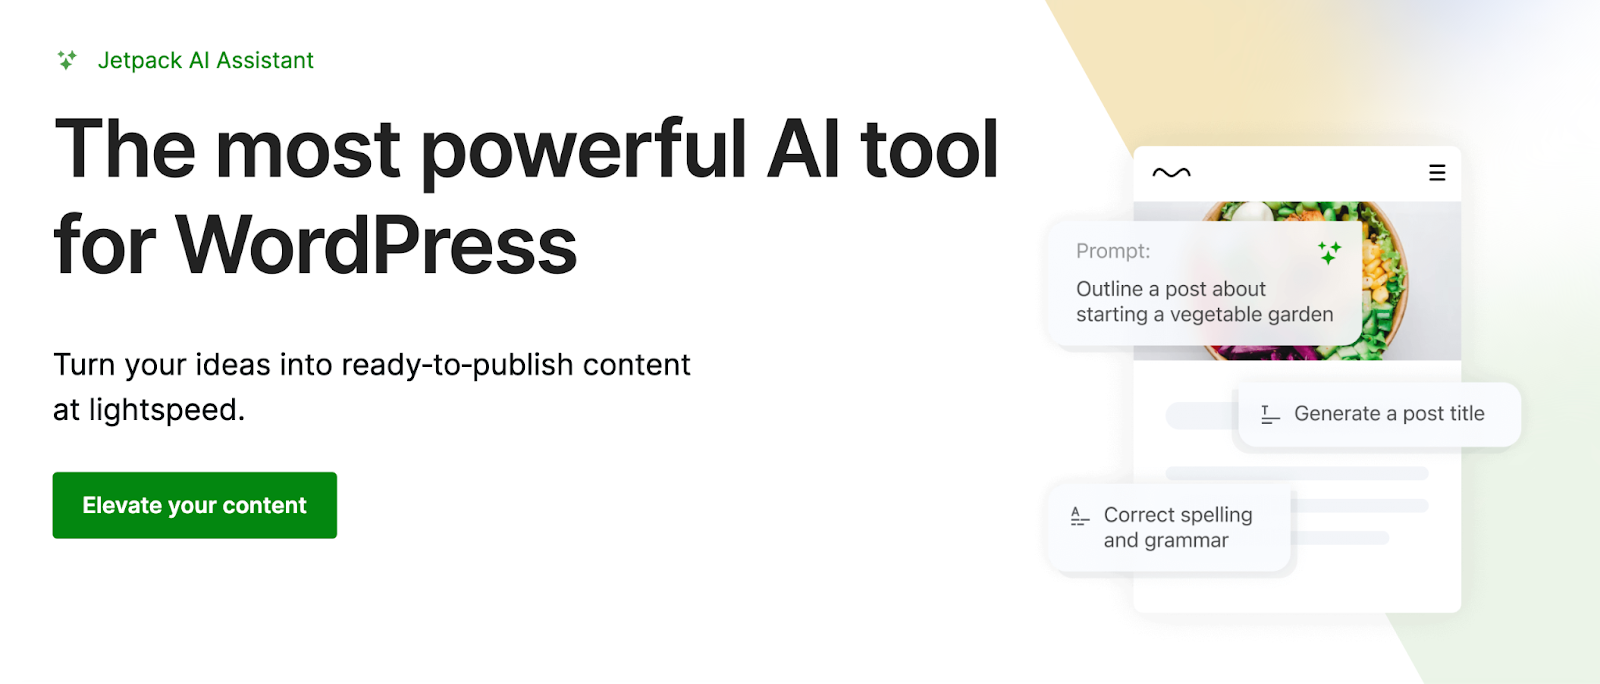 Jetpack AI Assistant позволяет вам за считанные минуты перейти от идеи к высококачественному контенту, что делает его одним из самых мощных и полезных AI-плагинов для WordPress.